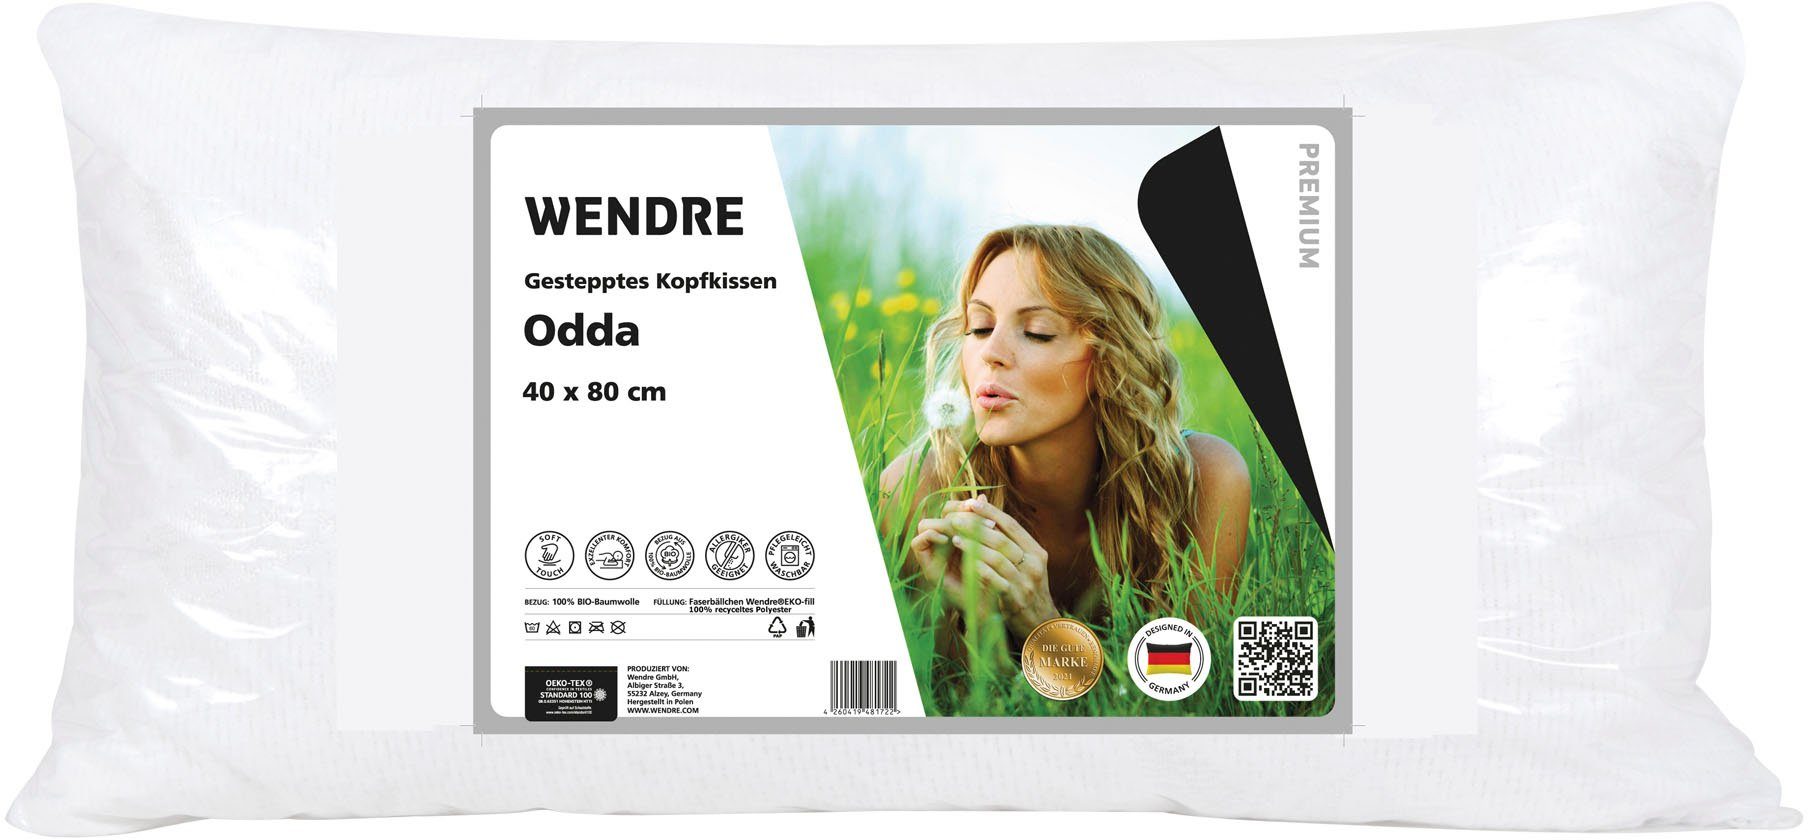 in Wendre, Baumwolle, Materialien, Odda, Bezug: aus 40x80 Baumwollkissen veganen Baumwollkissen 100% cm 80x80 oder